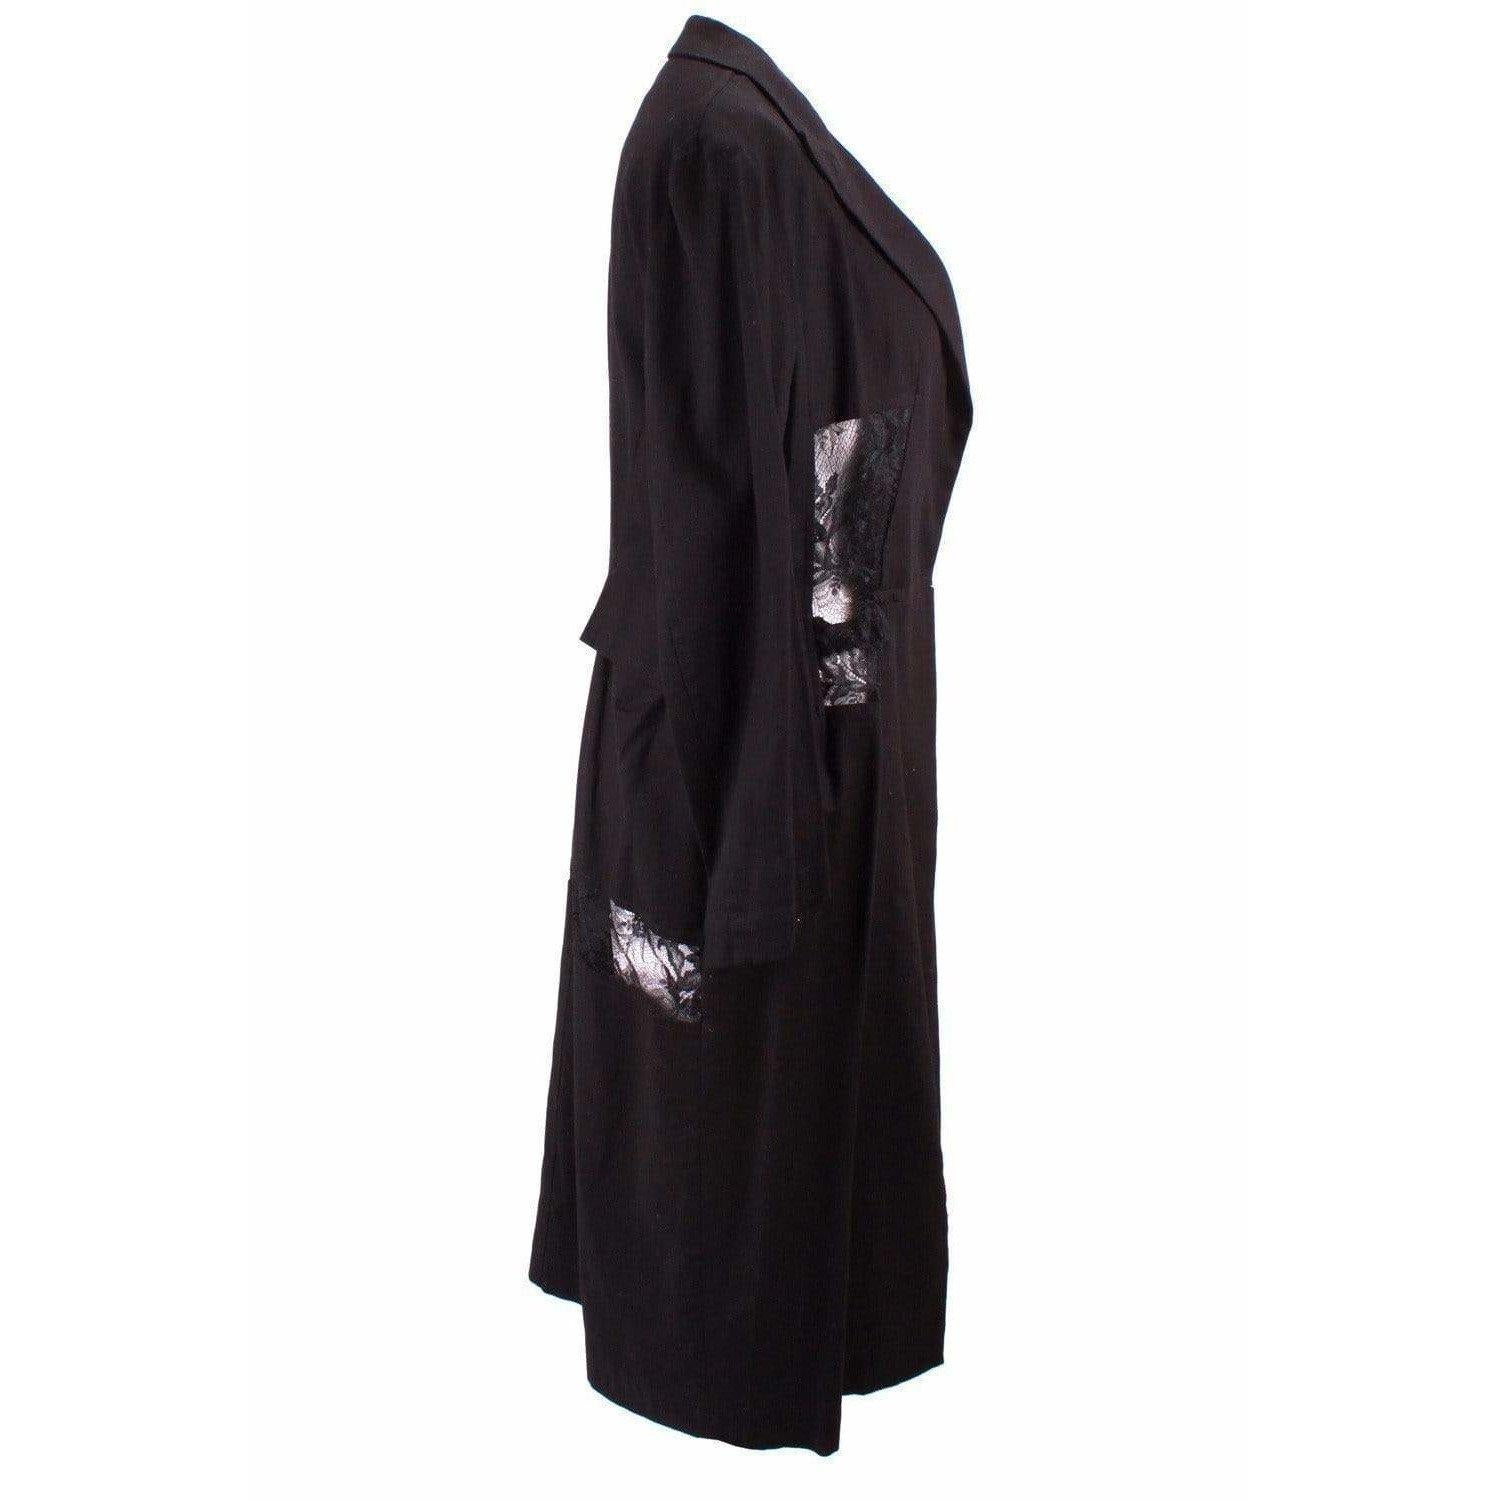 Longue veste en coton noir avec de superbes panneaux de dentelle découpés le long de la taille et du dos. Cette élégante veste provient de Y's by Yohji Yamamoto. Fermeture par un crochet et un œillet.